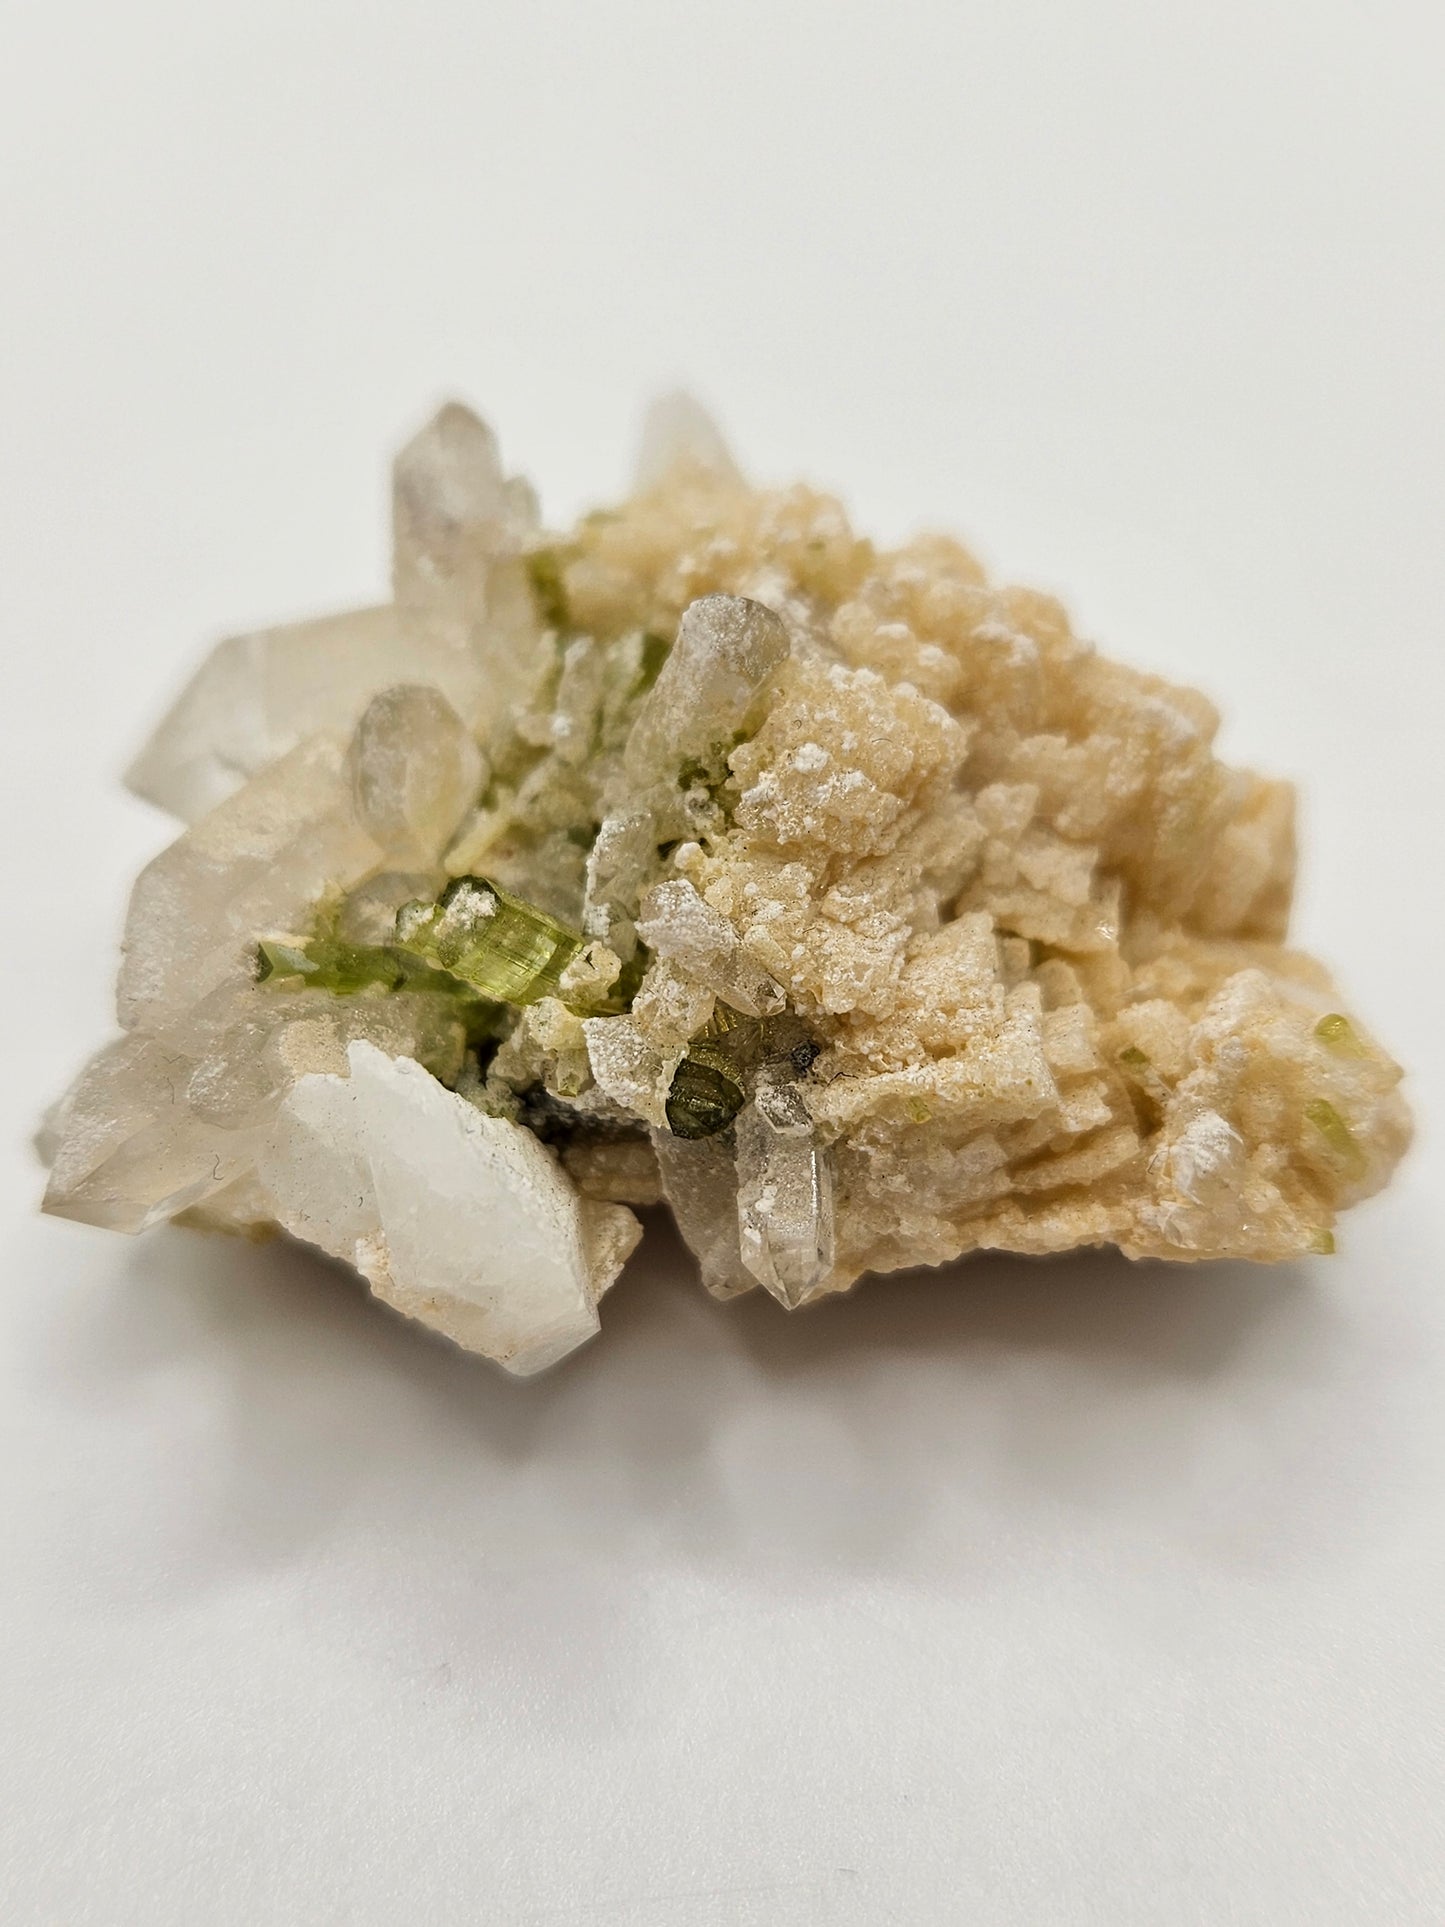 Hambergite w/ Green Tourmaline, Quartz, Dolomite, Albite Matrix (Shigar Mines)